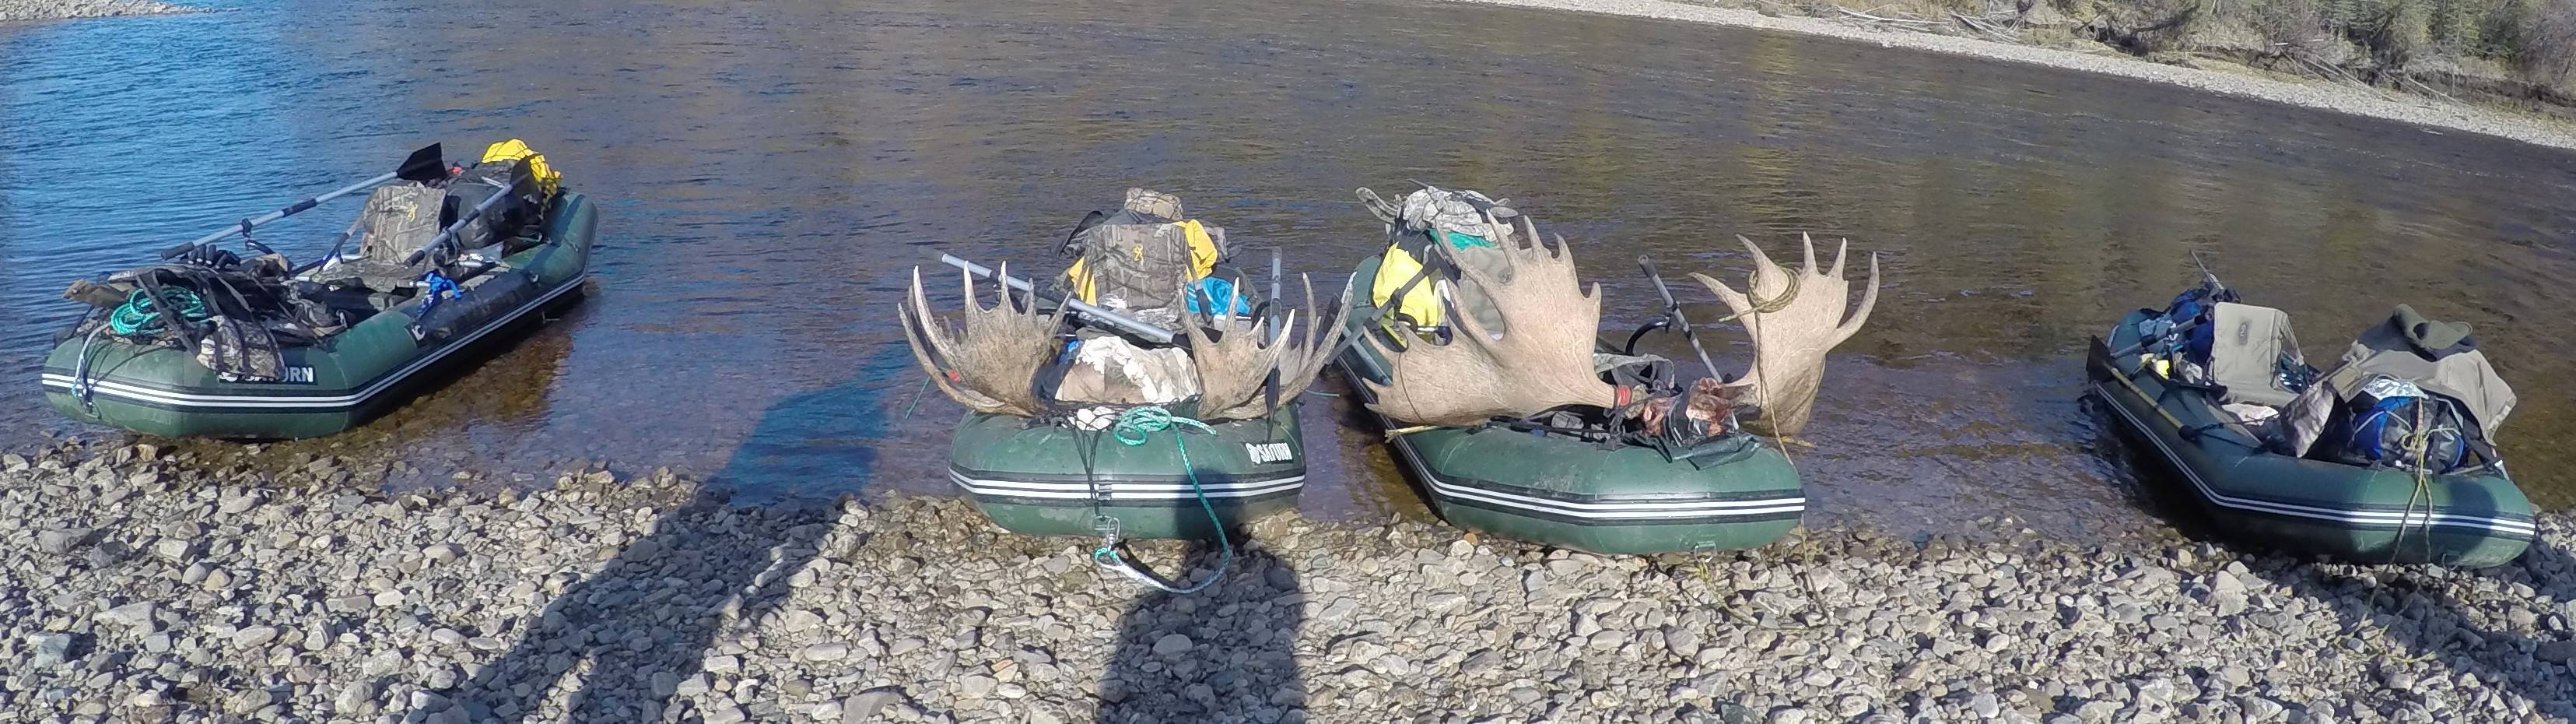 Saturn RD365 inflatable raft used in moose hunting in Alaska.